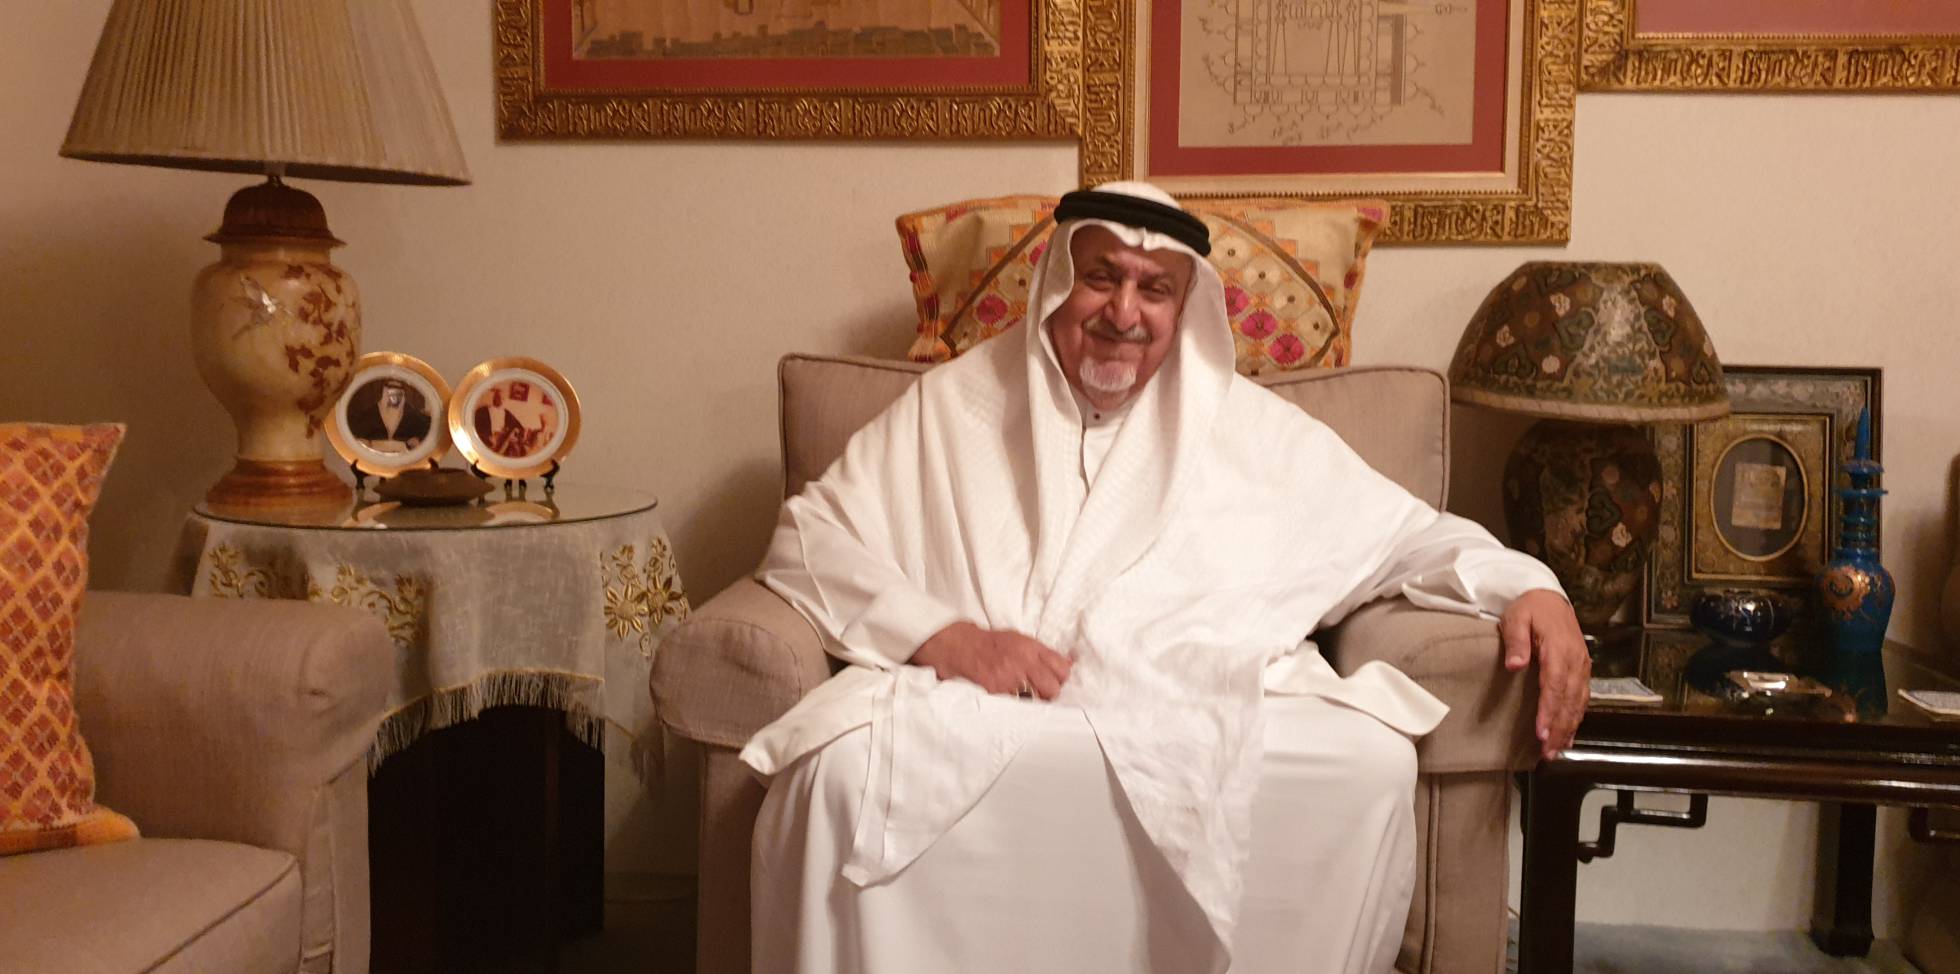 آخر سلطان في حضرموت يقترح دمج اليمن في دول مجلس التعاون الخليجي